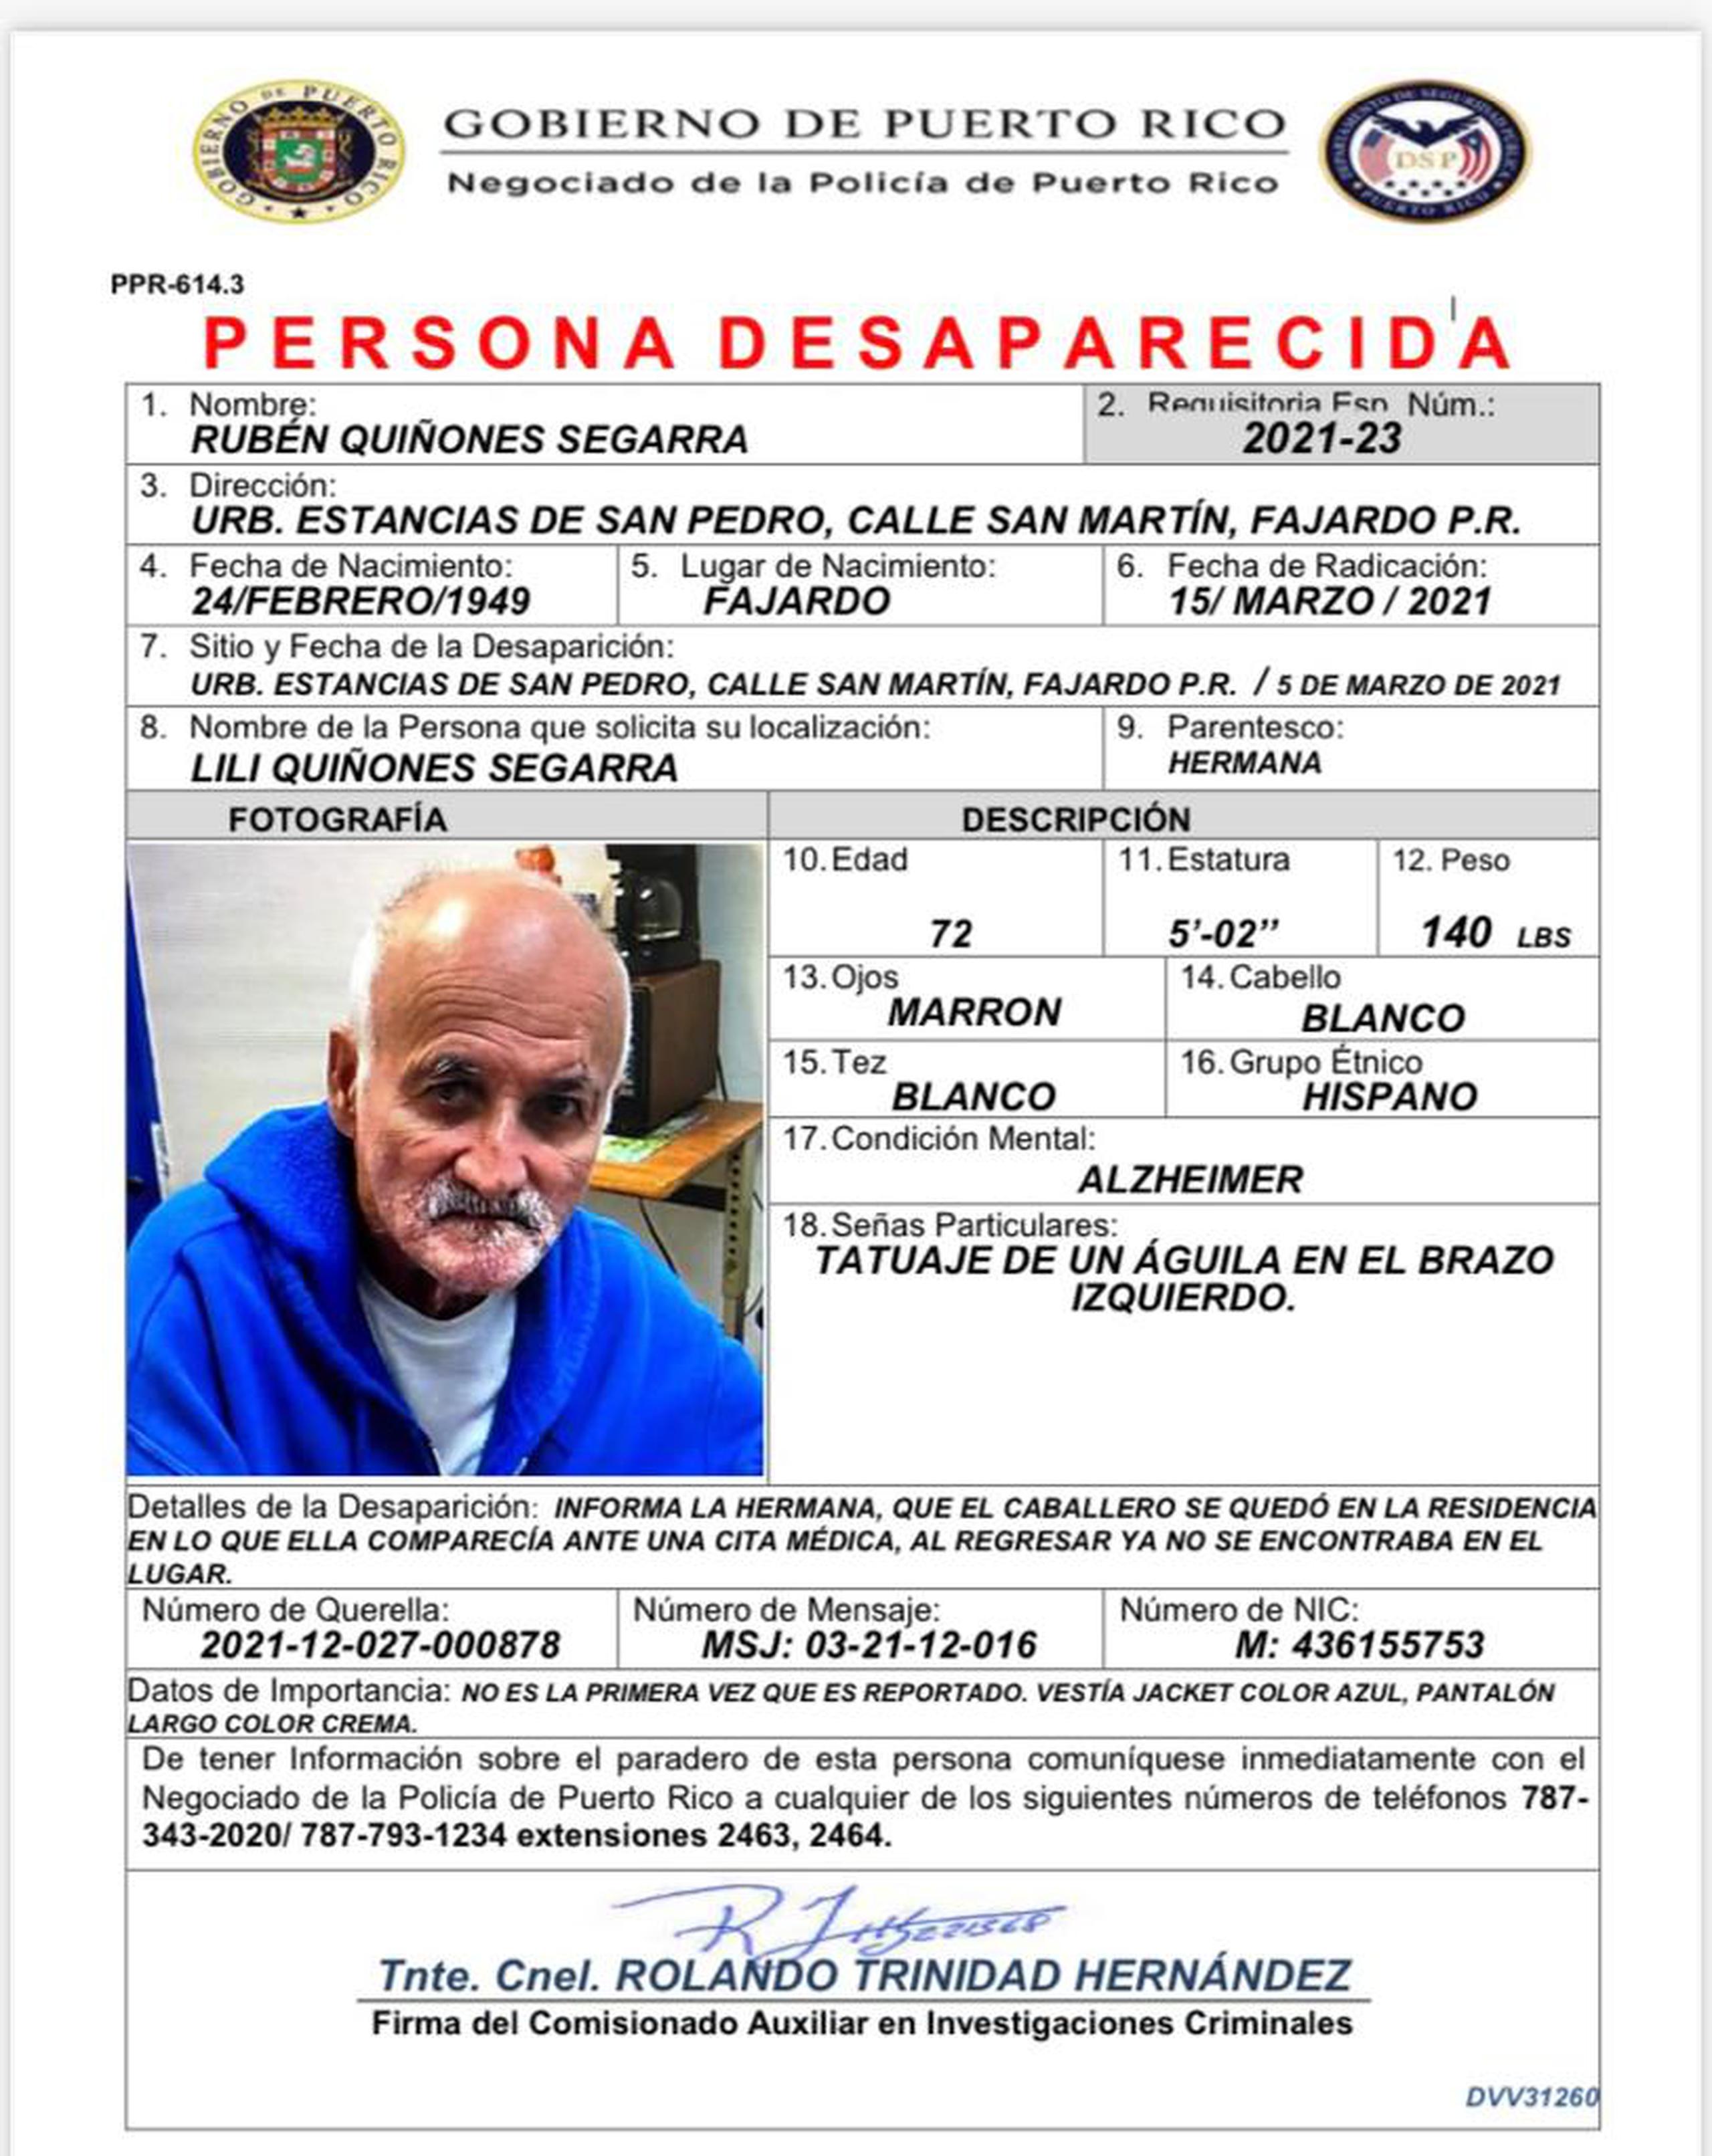 Rubén Quiñones Segarra de 72 años, se encuentra desaparecido desde 5 de marzo, cuando fue visto por última vez al salir de su residencia localizada en la calle San Martín de la urbanización Estancias de San Pedro, en Fajardo.